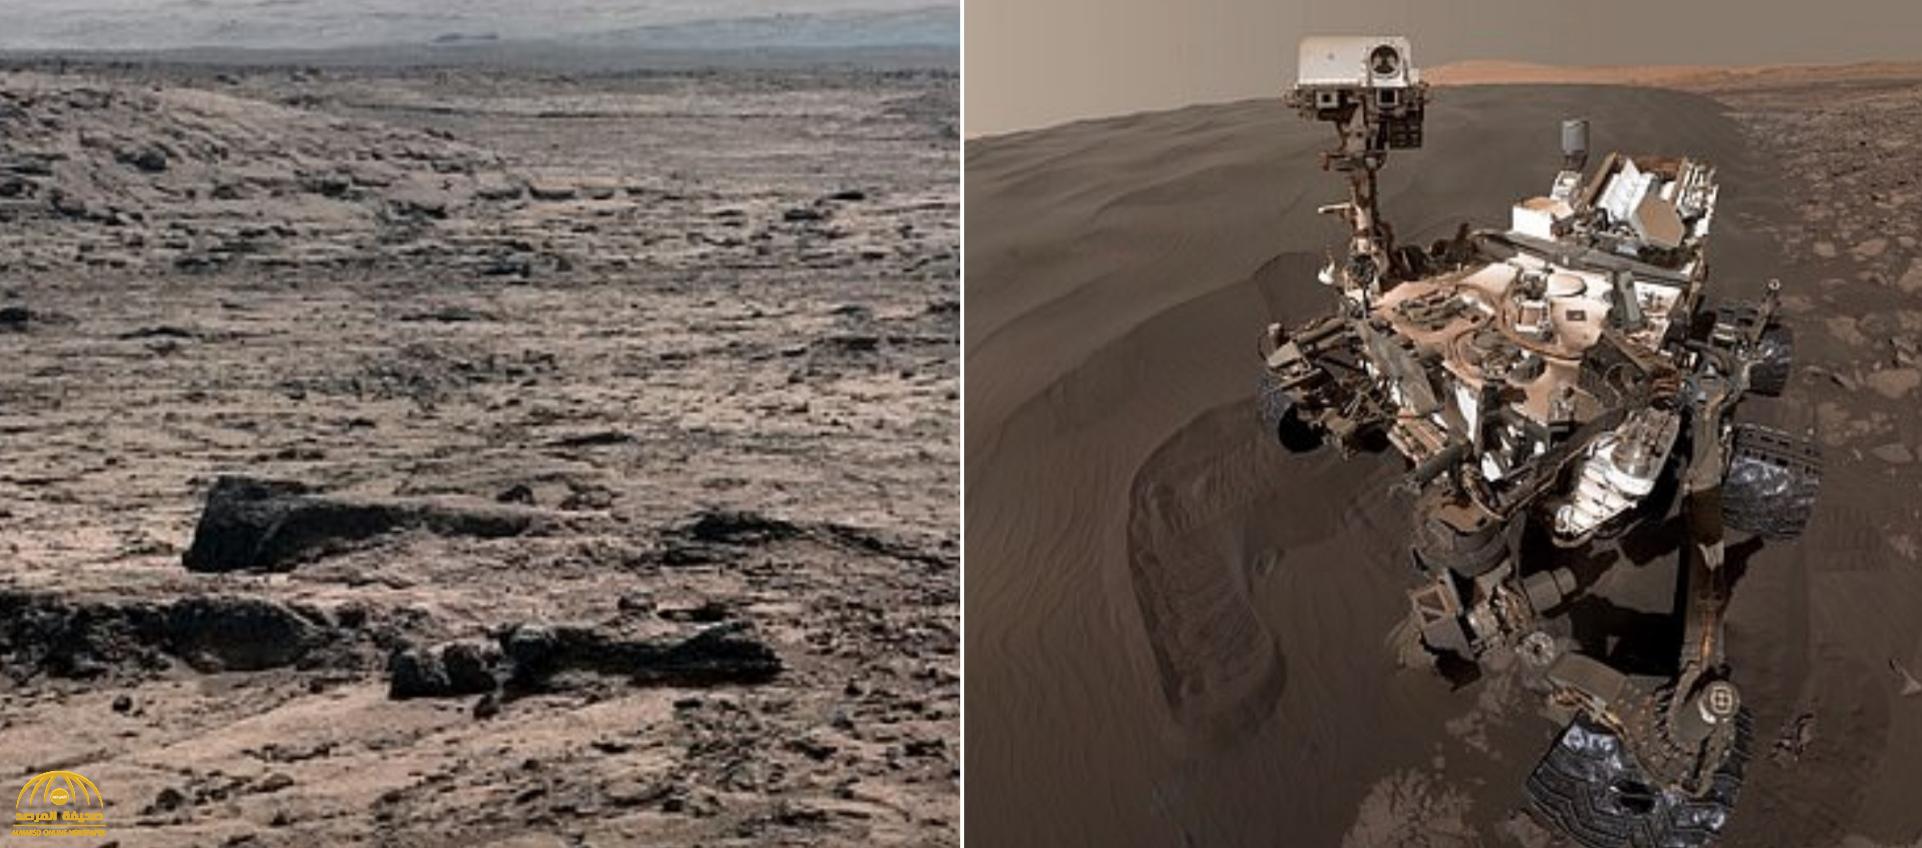 لأول مرة.. شاهد: صور لا تصدق  من " المريخ"  تم التقاطها من سطح الكوكب بدقة مذهلة من قبل مراوح الفضاء!